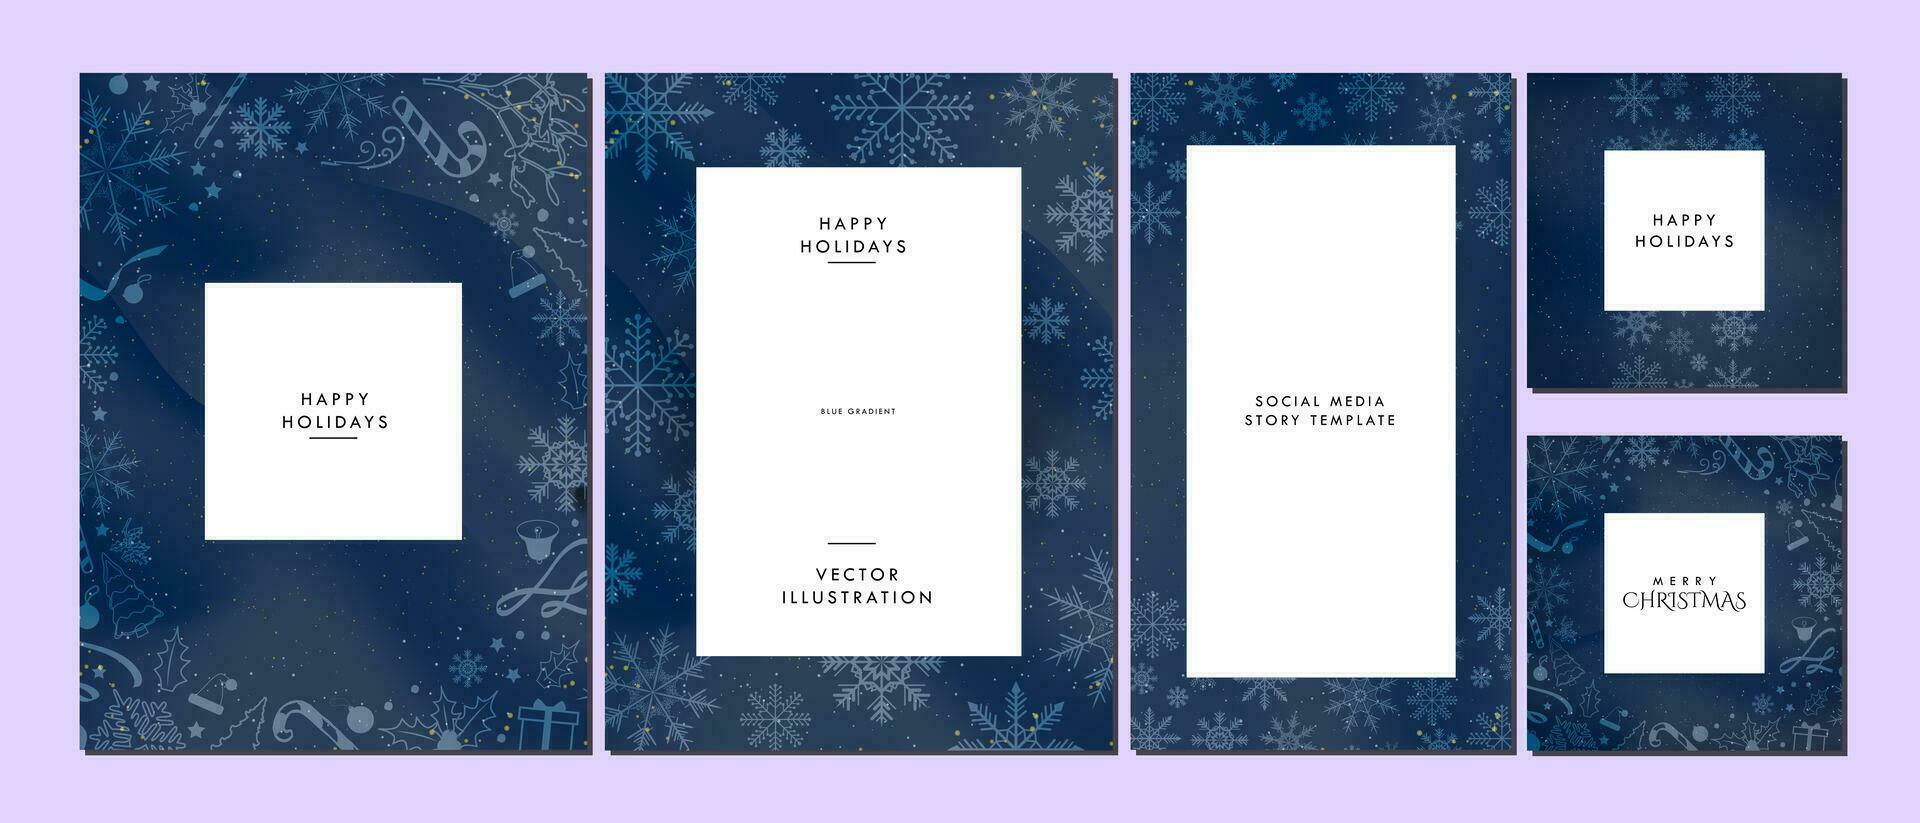 alegre Navidad y contento fiesta saludo tarjetas, social medios de comunicación historia, y póster en azul degradado antecedentes y suave blanco Navidad elementos. elegante Navidad modelo diseños vector Arte.